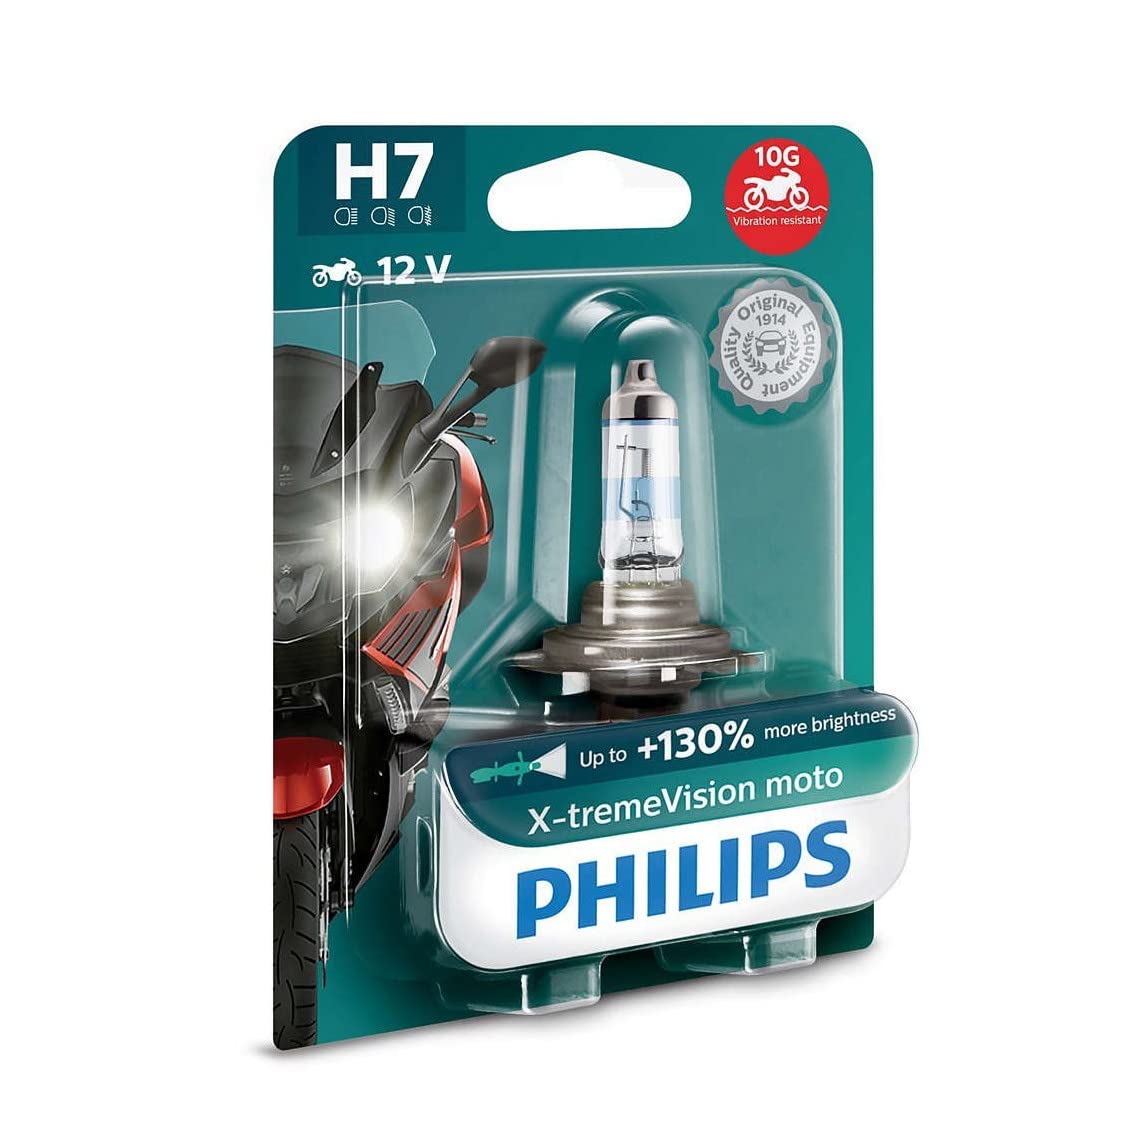 Philips 12972XV+BW X-Tremevision Moto +130% H7 Motorrad-Scheinwerferlampe, 1 Stück von Philips automotive lighting